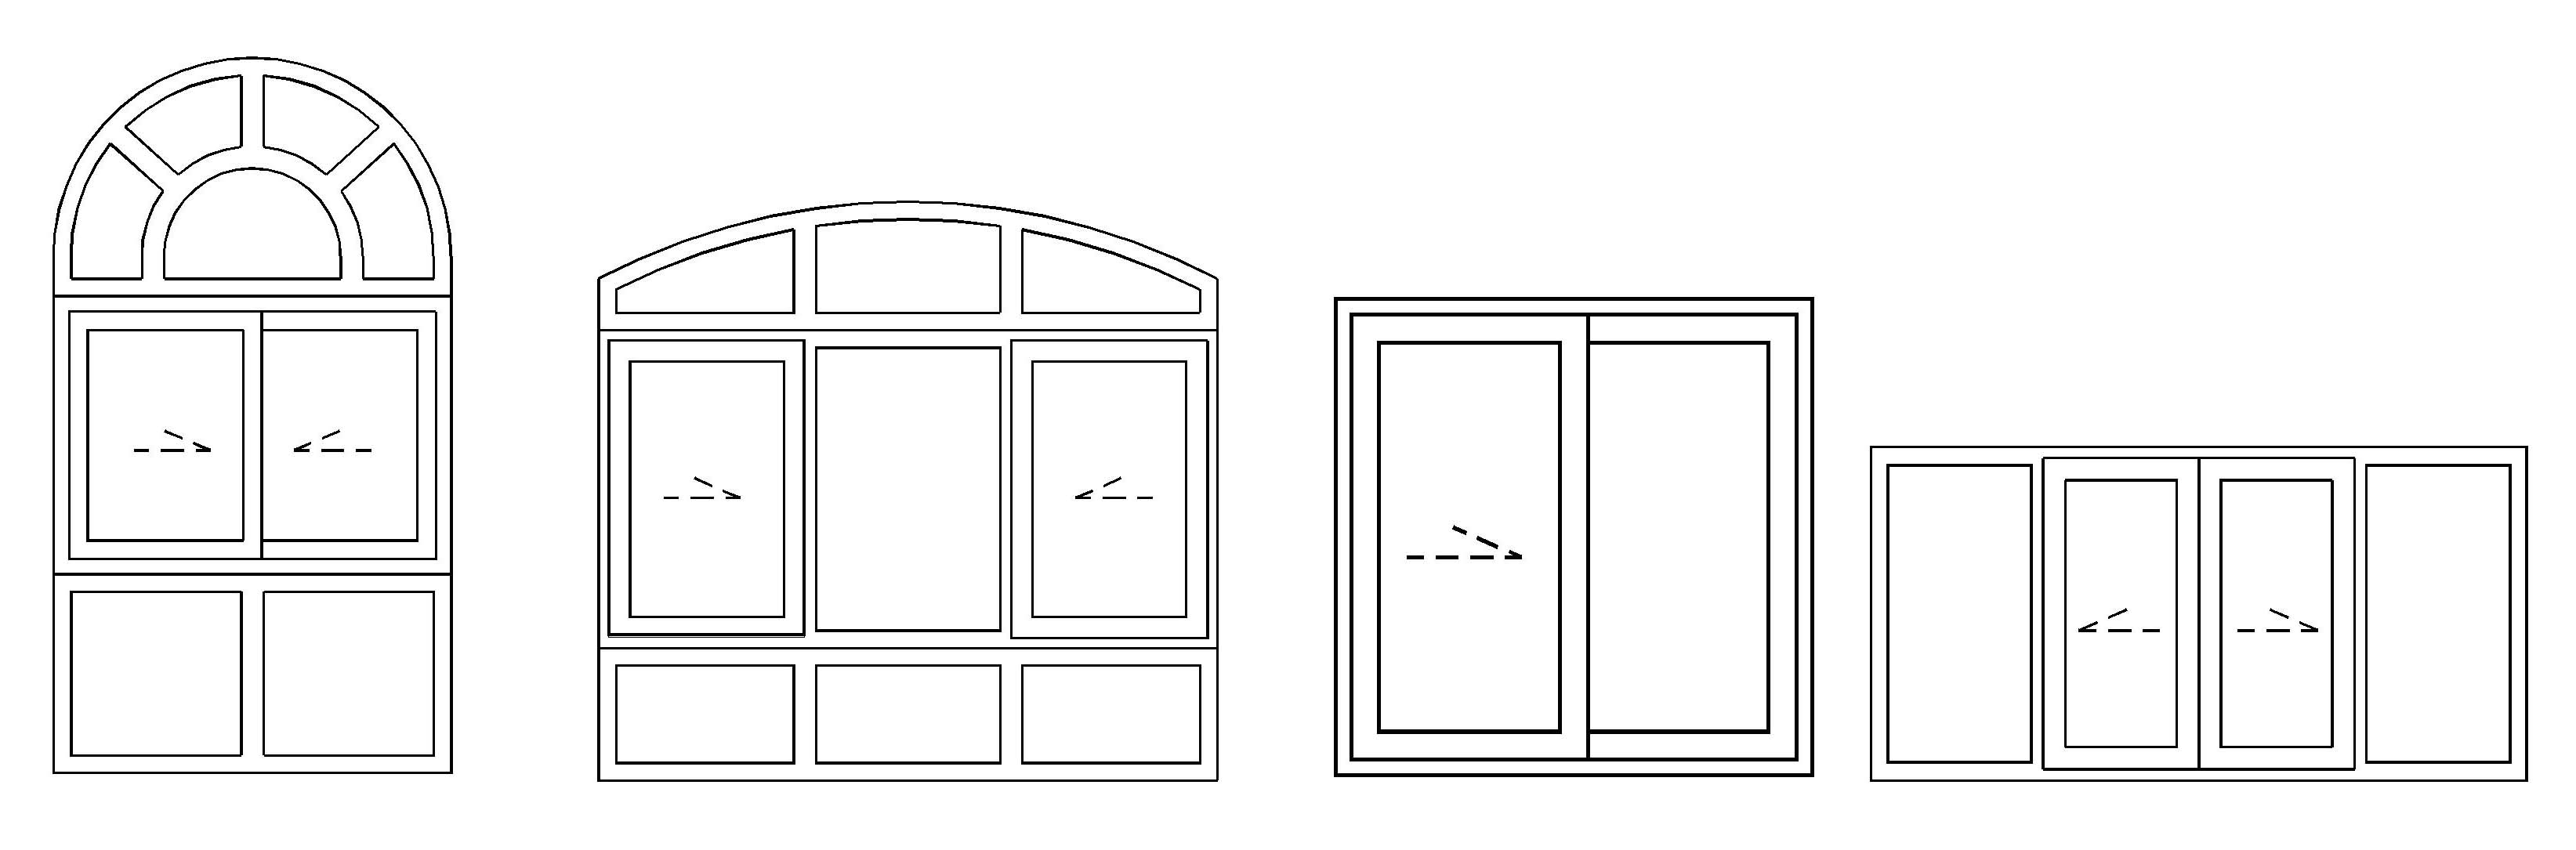 Solutions-are-possible-sliding-window-sliding-door-design-posibilities.jpg